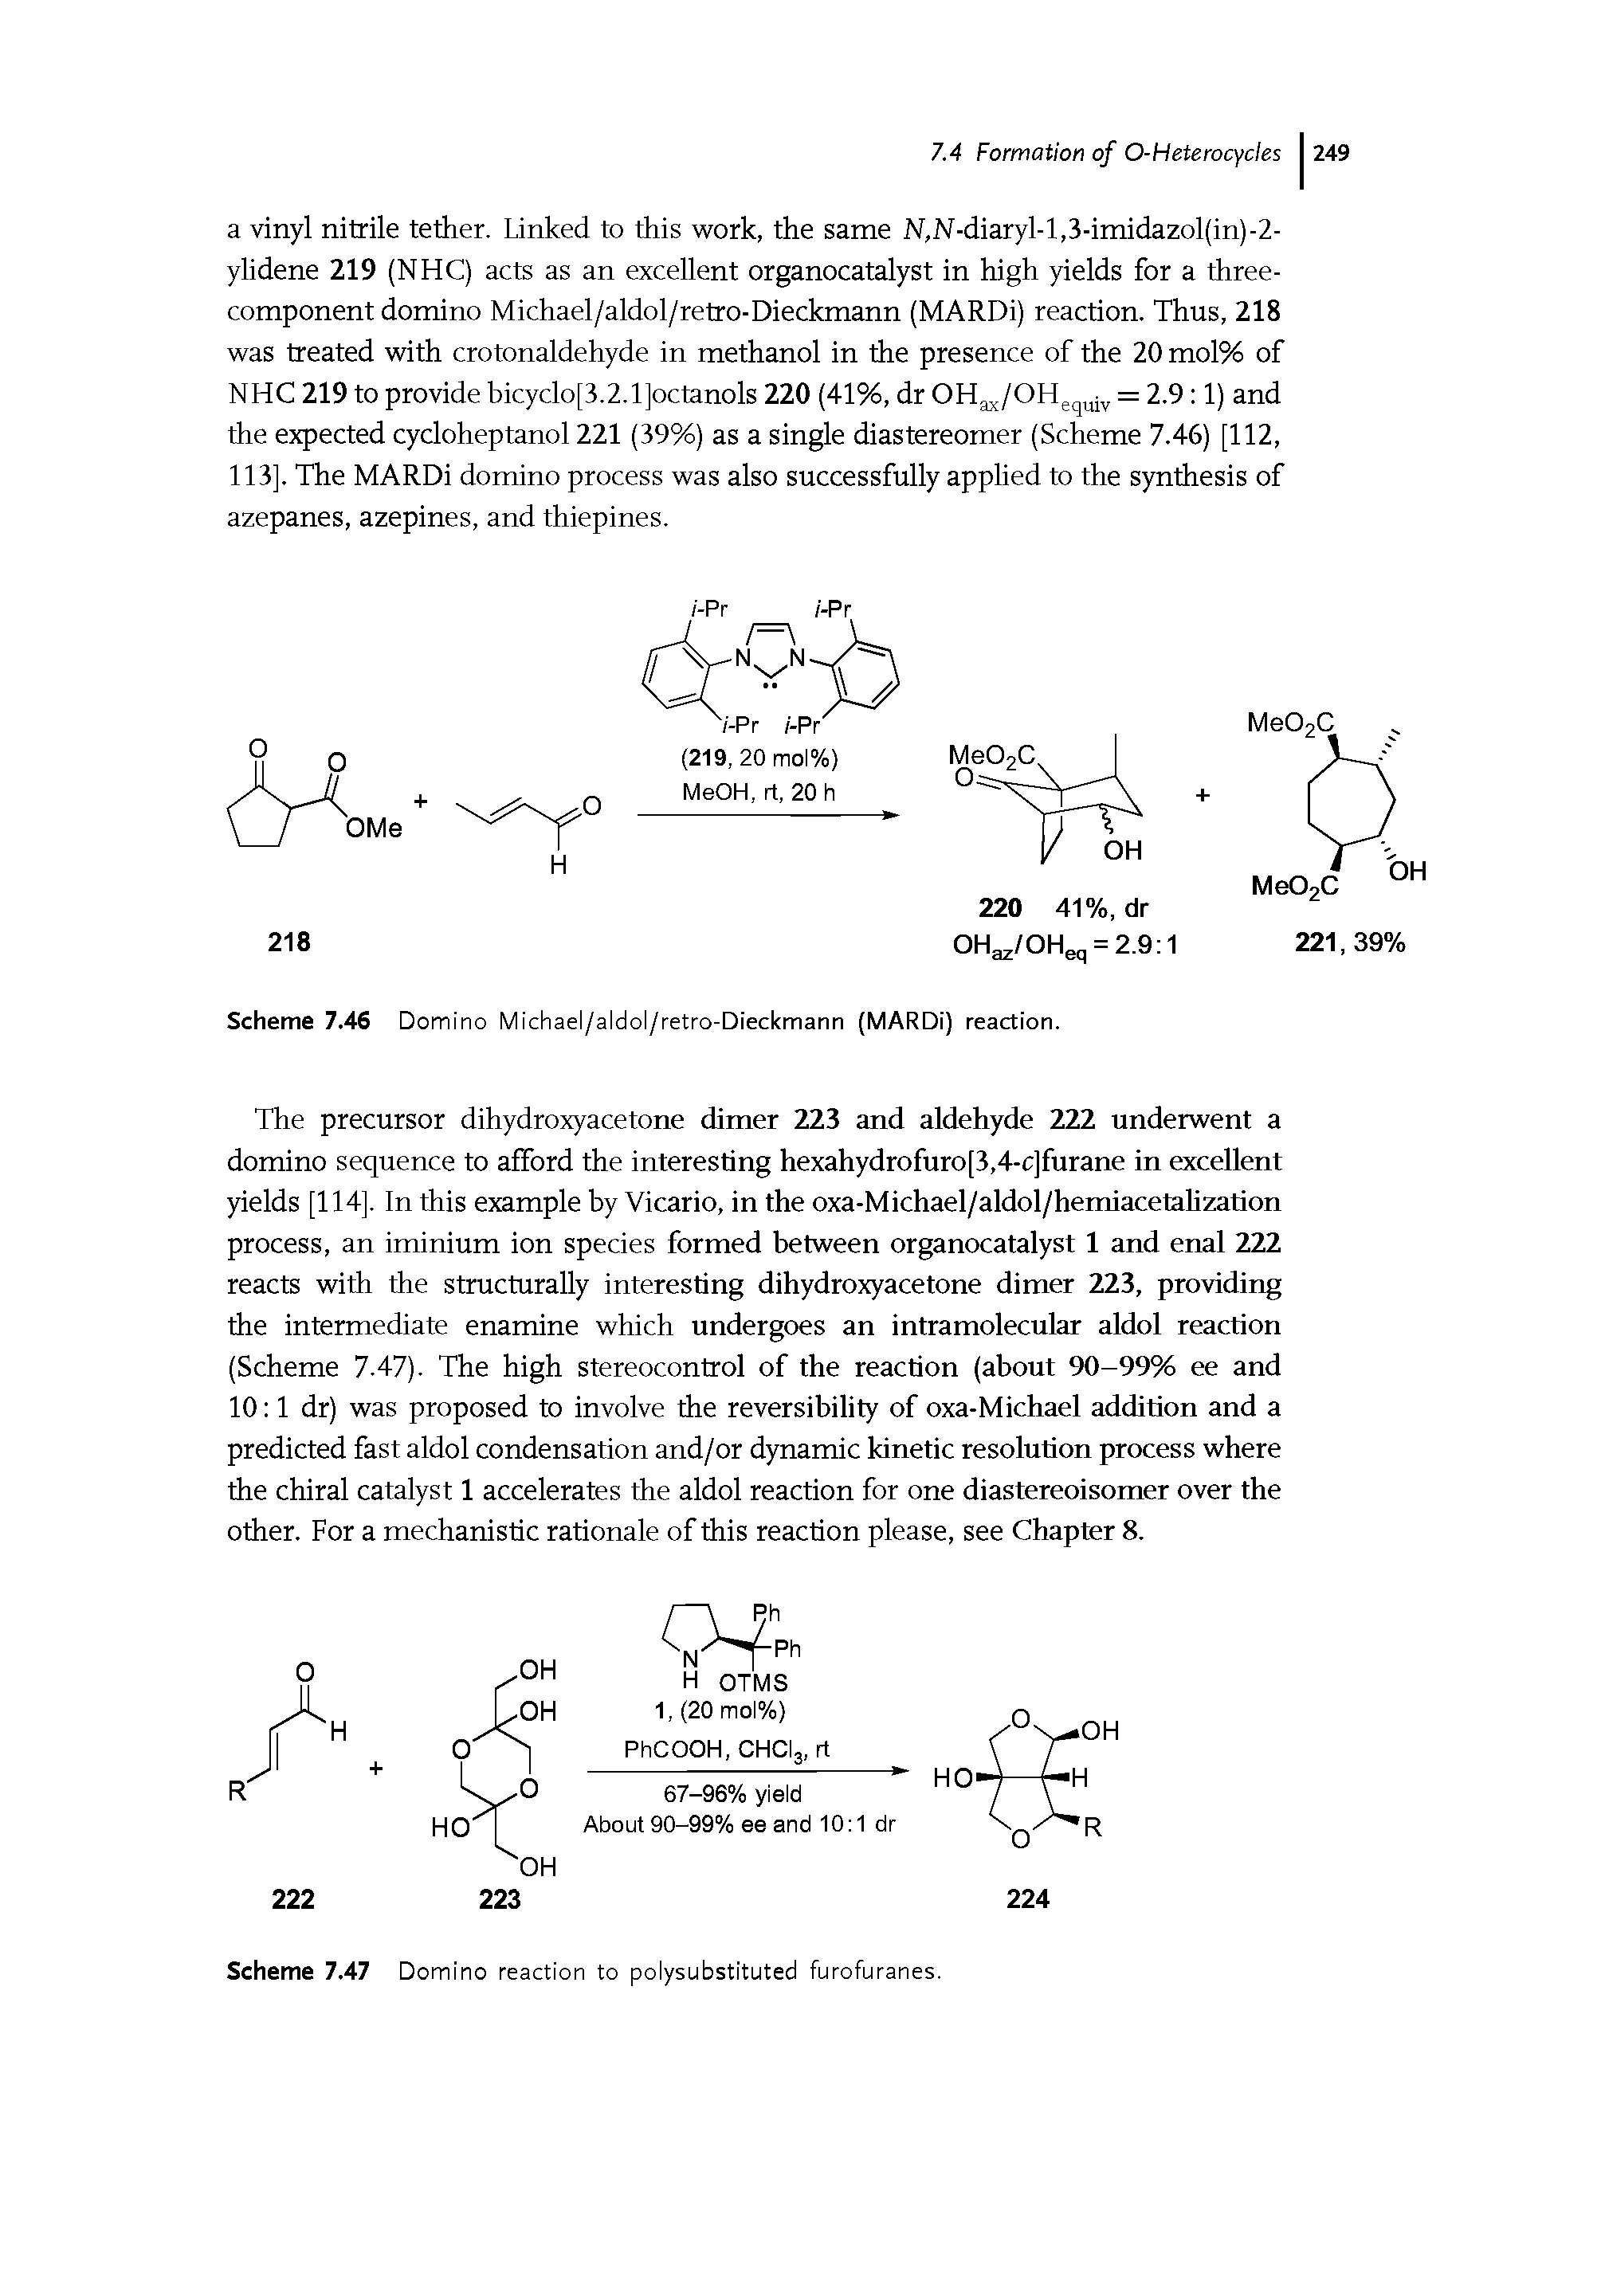 Scheme 7.46 Domino Michael/aldol/retro-Dieckmann (MARDi) reaction.